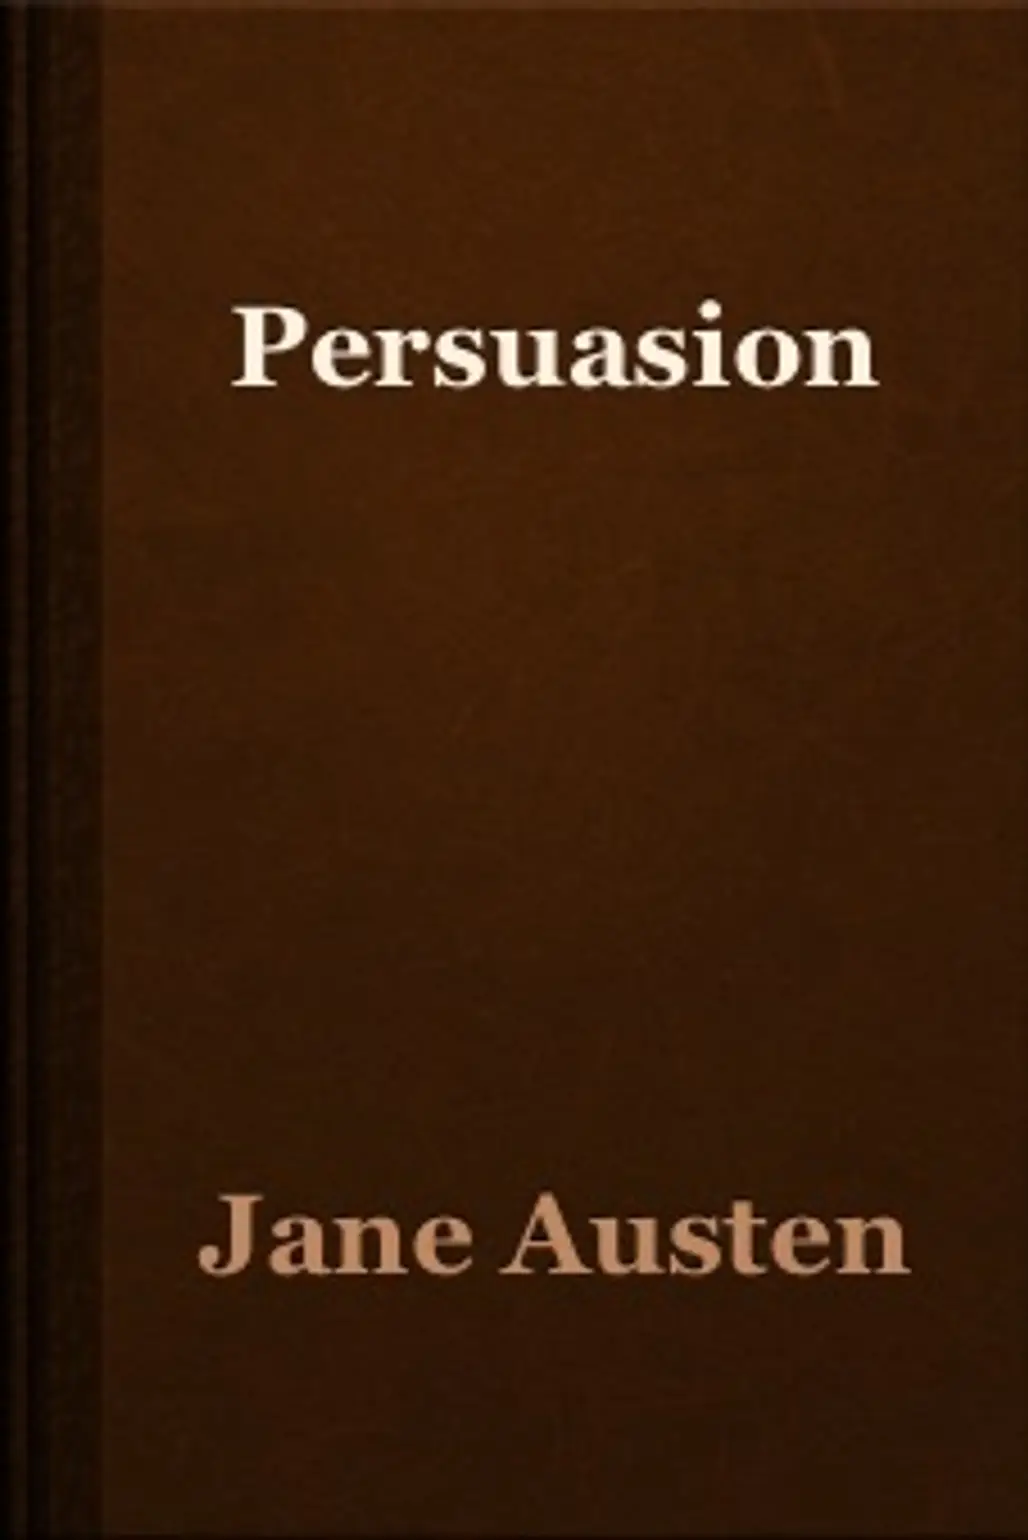 Anne Elliot (Persuasion – Jane Austen)